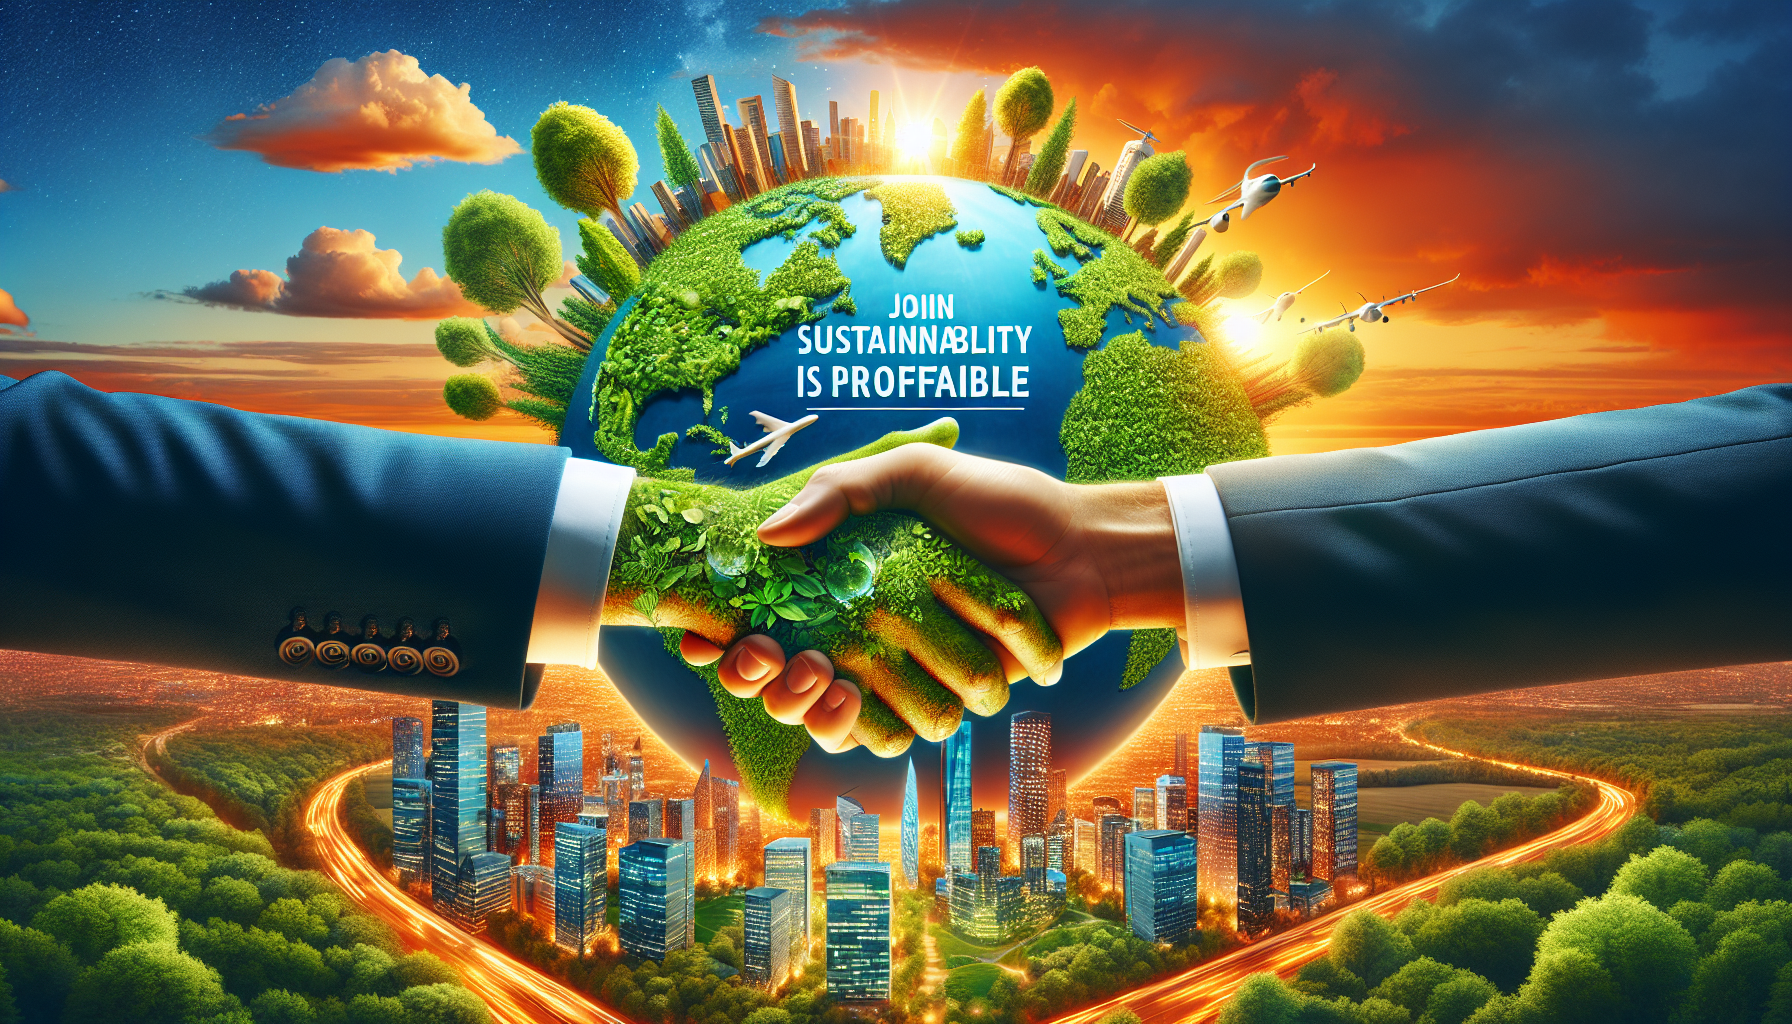 découvrez comment l'impression d'entreprise peut jouer un rôle clé dans la promotion du développement durable et des pratiques éco-responsables.